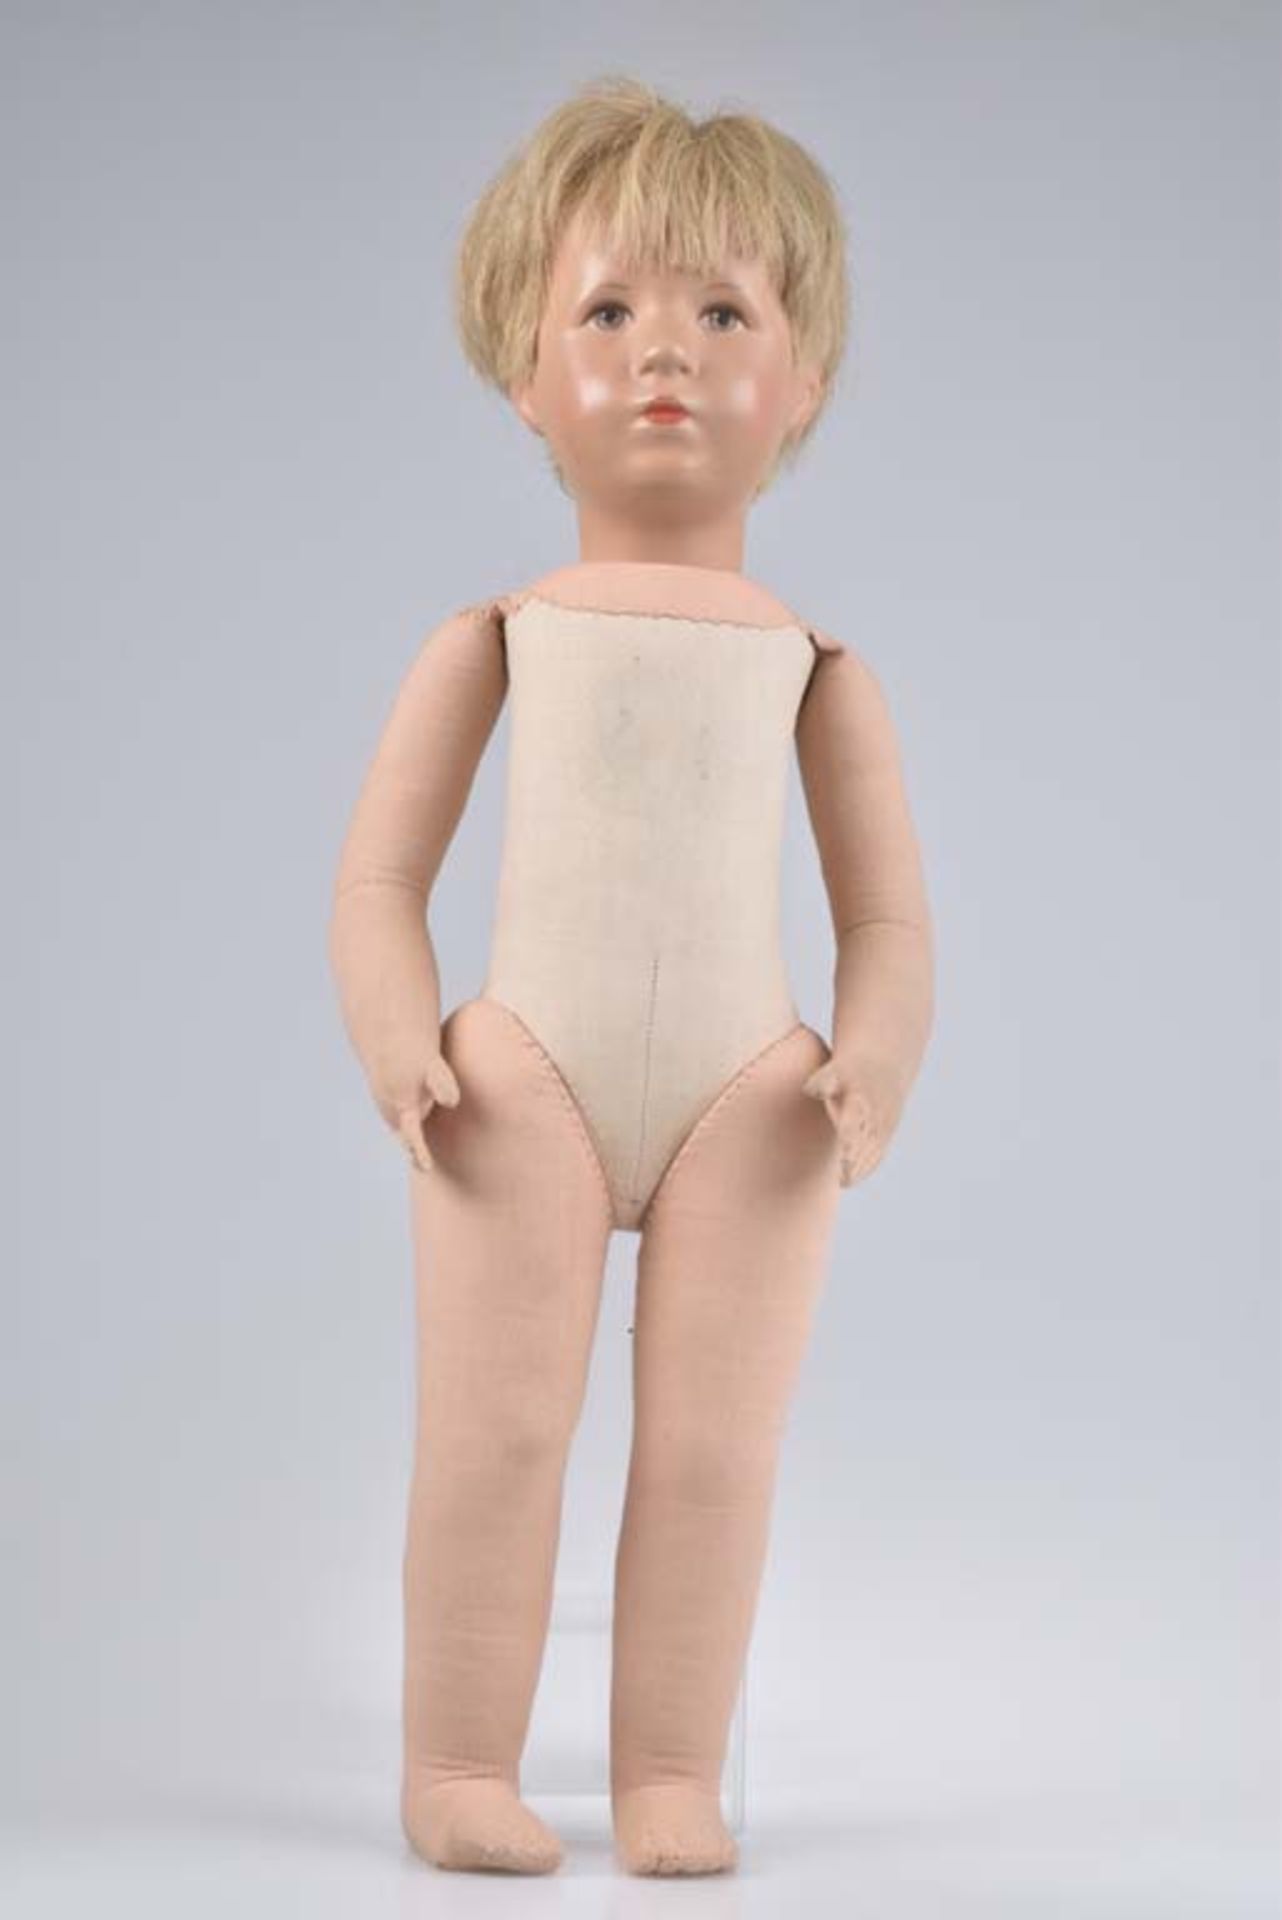 KÄTHE KRUSE Puppe Junge, 1960er Jahre, Kunststoffkopf, dunkelblonde Echthaare, gem. g - Bild 2 aus 4